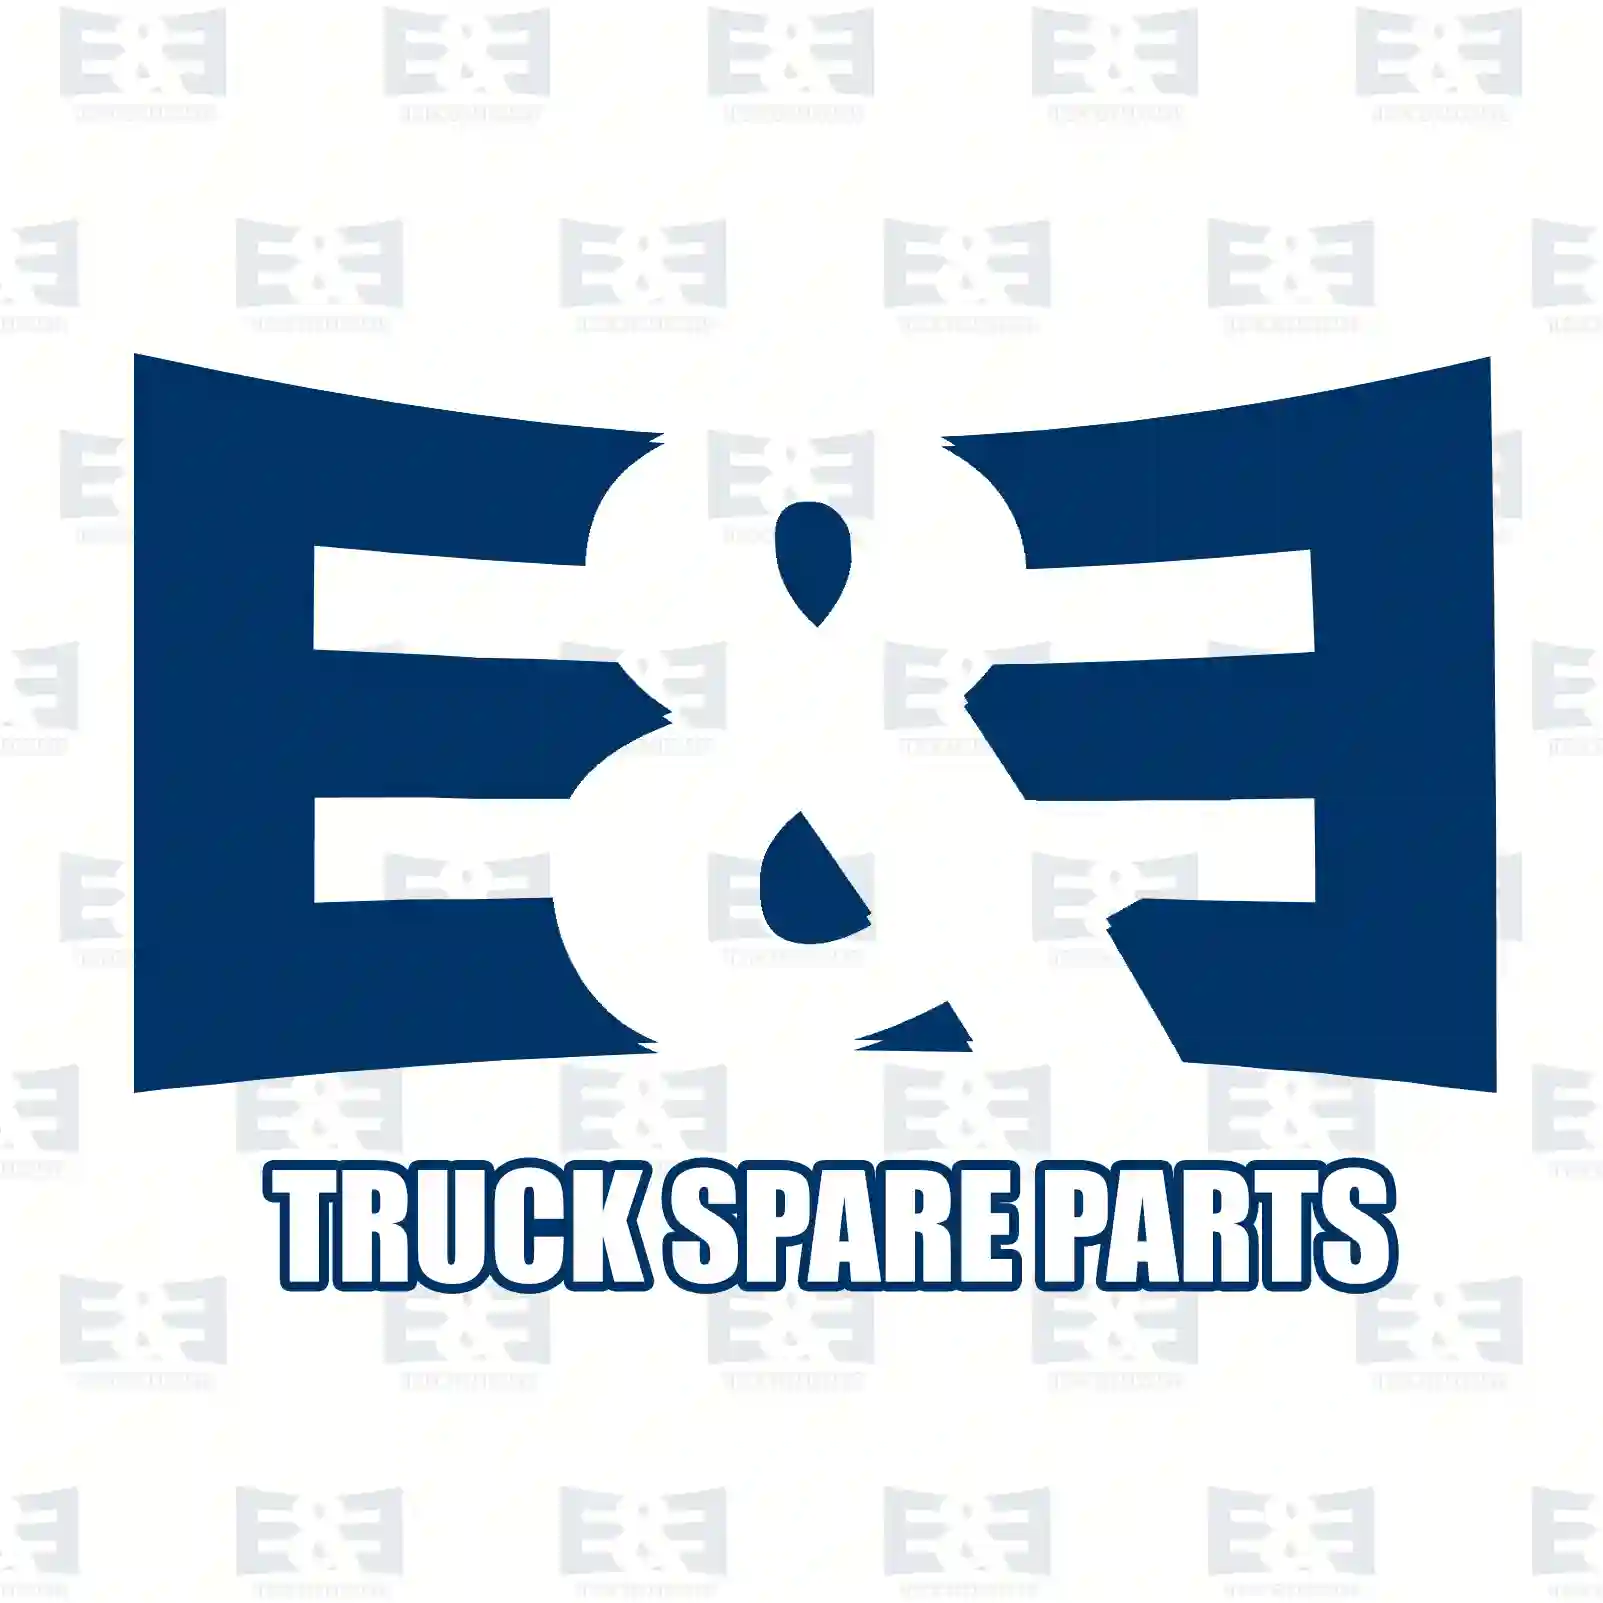  Castle nut || E&E Truck Spare Parts | Truck Spare Parts, Auotomotive Spare Parts